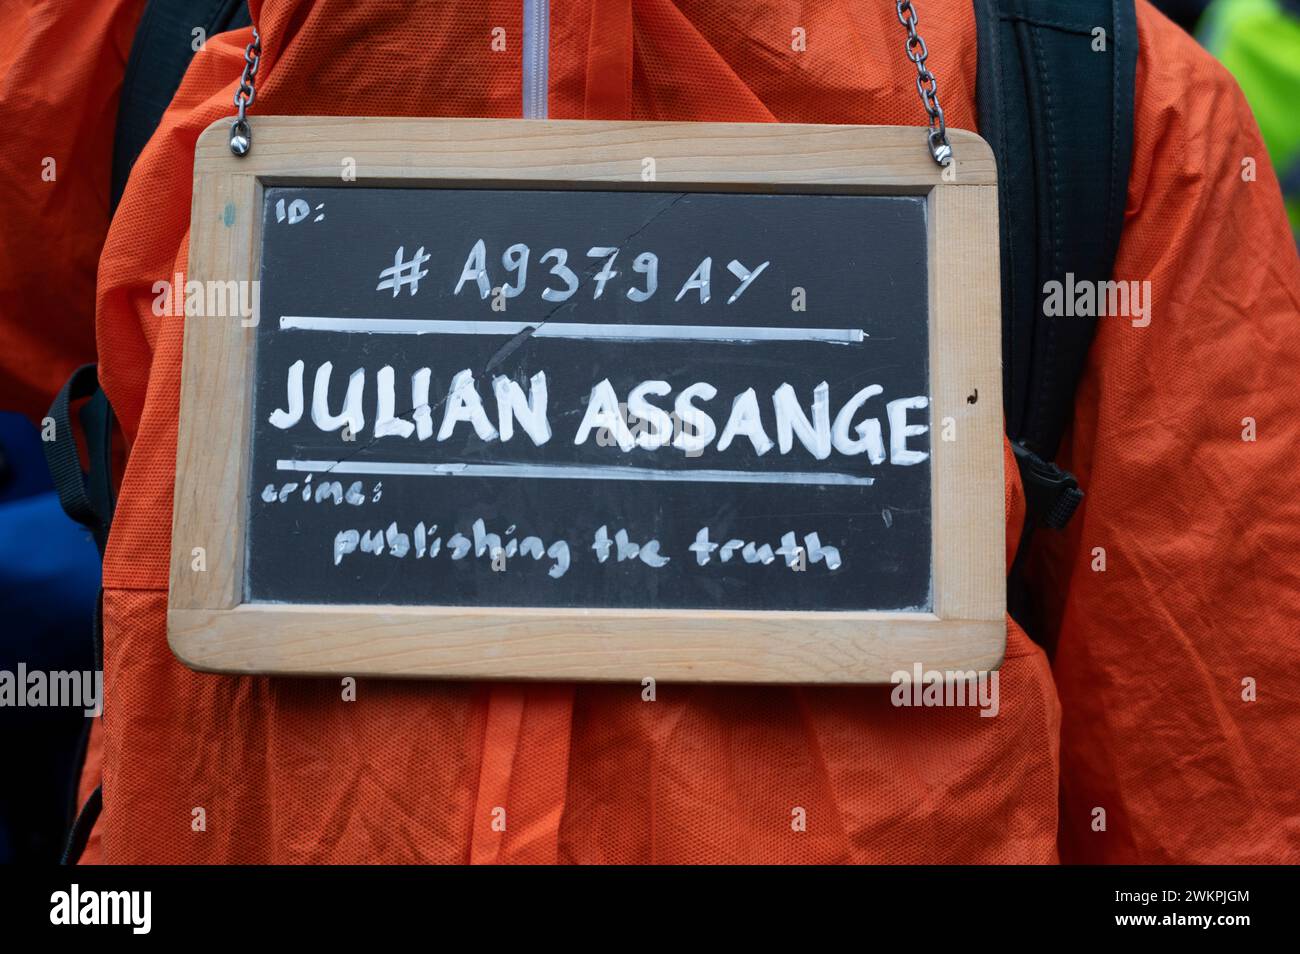 Les partisans du fondateur de Wikileaks, Julian Assange, manifestent devant les cours royales de justice pour réclamer sa liberté le deuxième jour d'une audience Banque D'Images